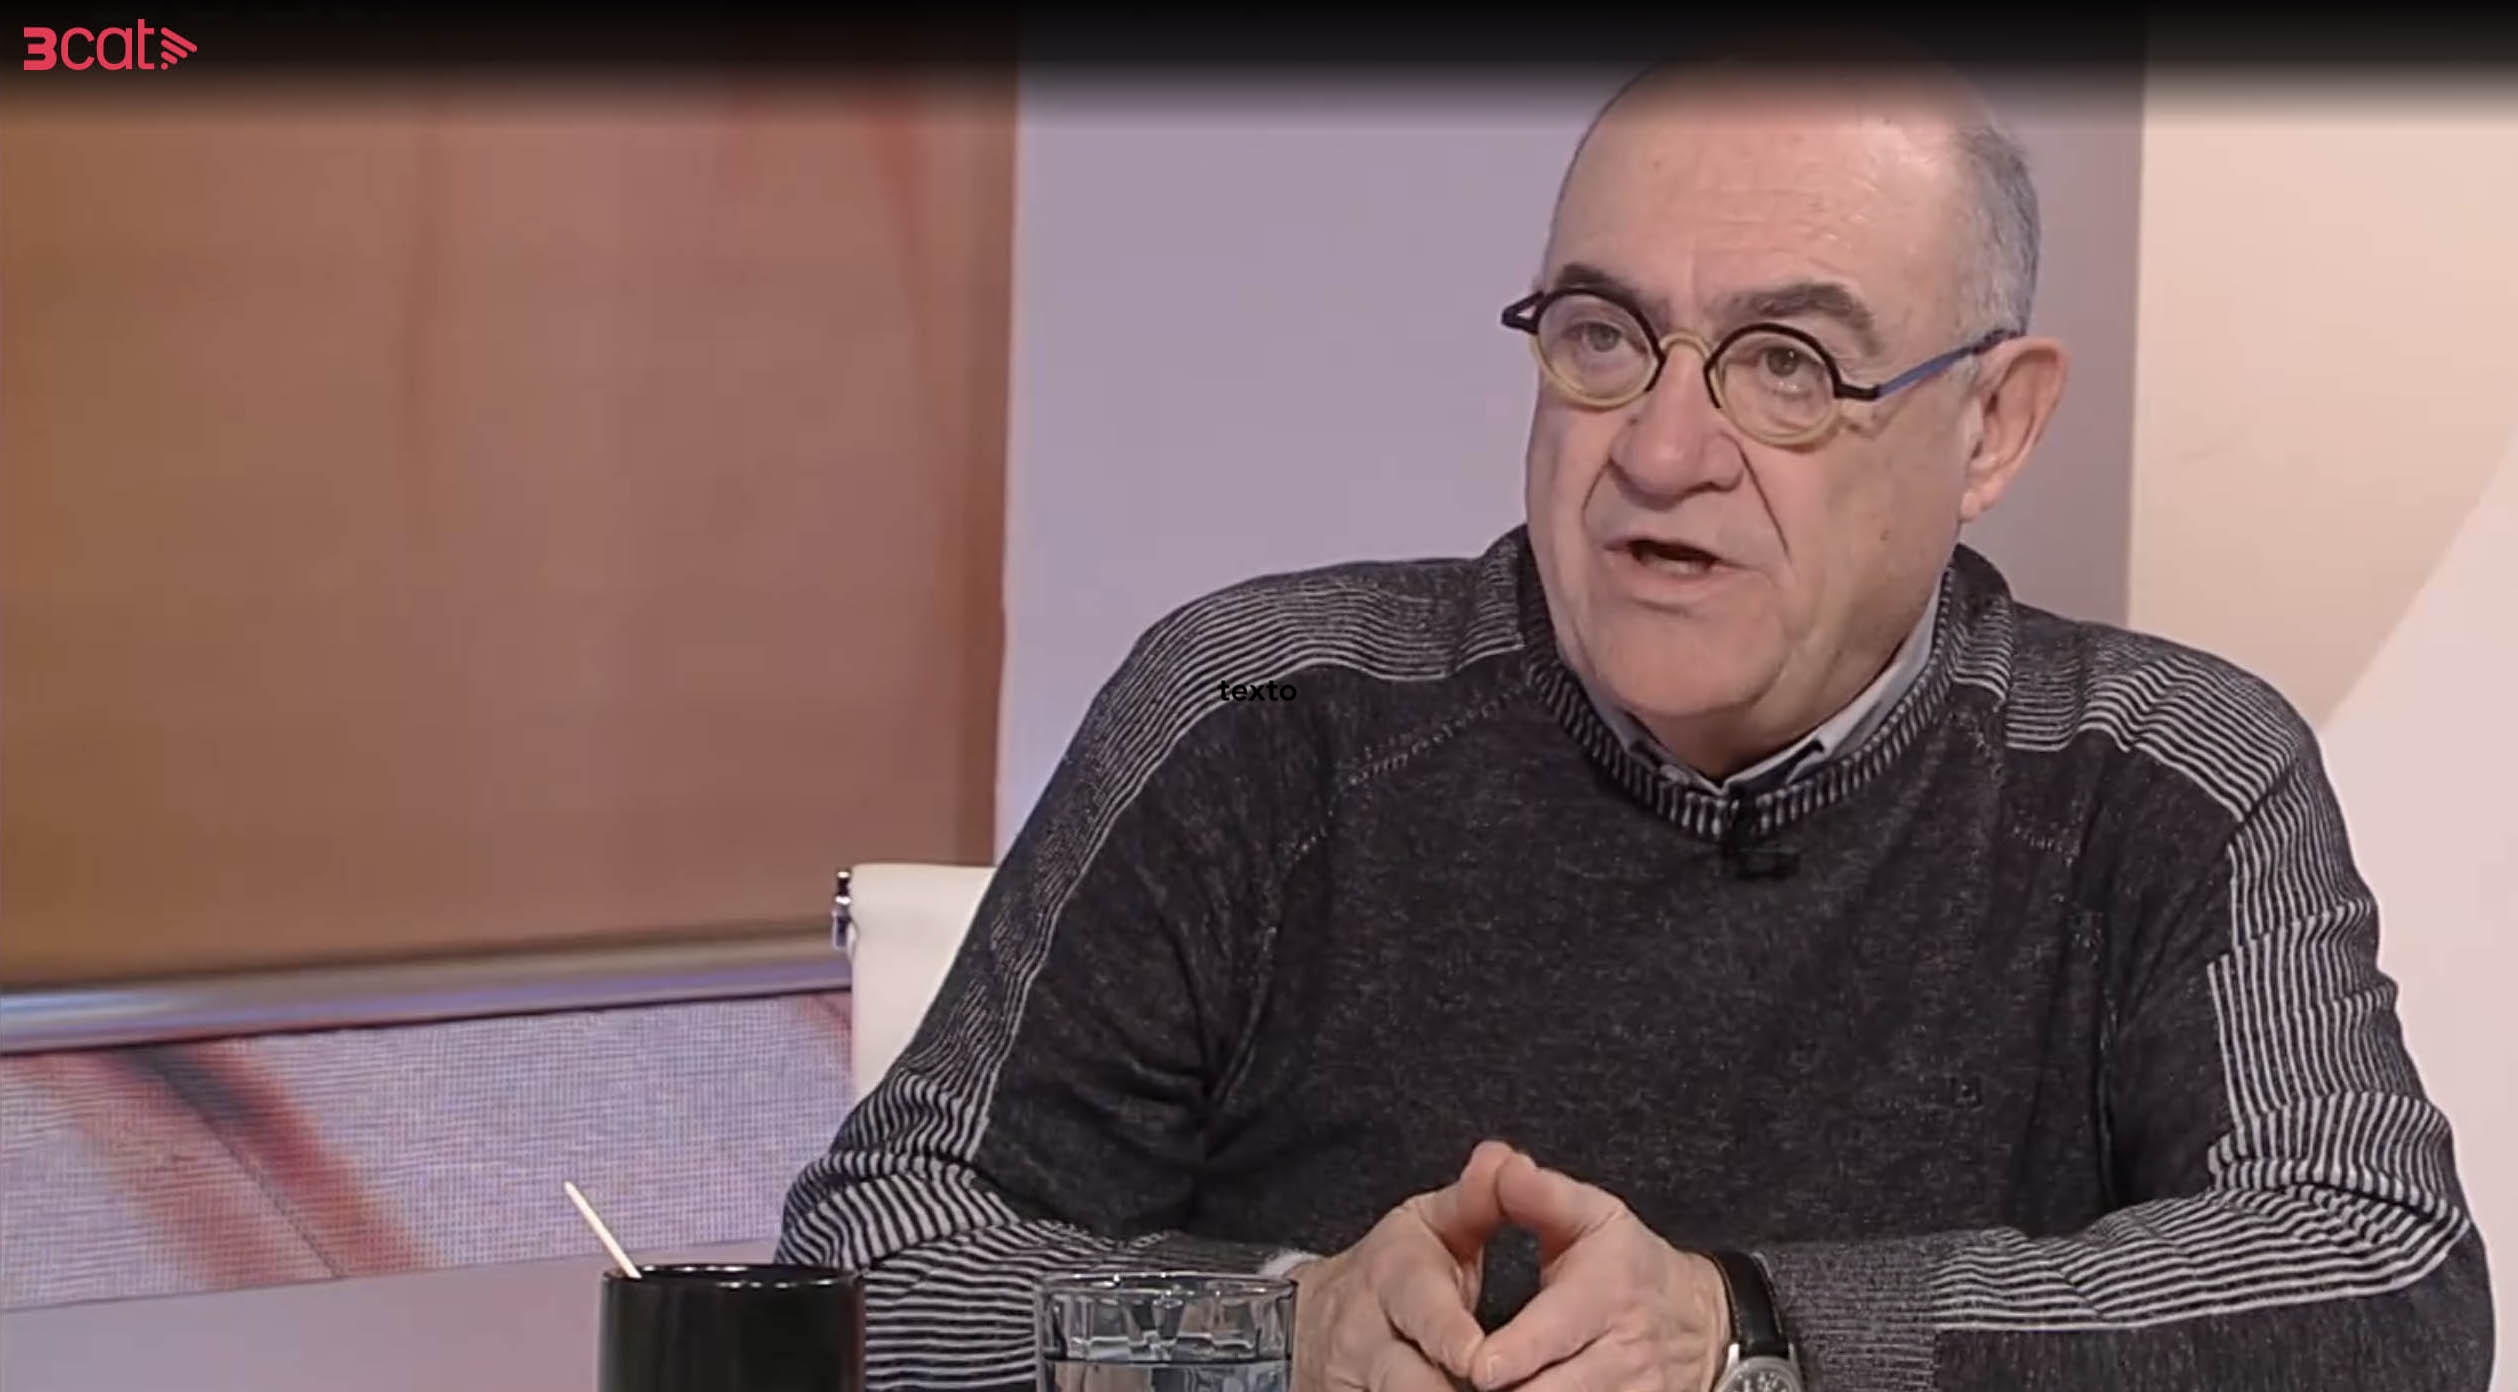 El COIB denuncia les declaracions de Jordi Barbeta davant del CAC, el CIC i la Defensora de l'Audiència de TV3